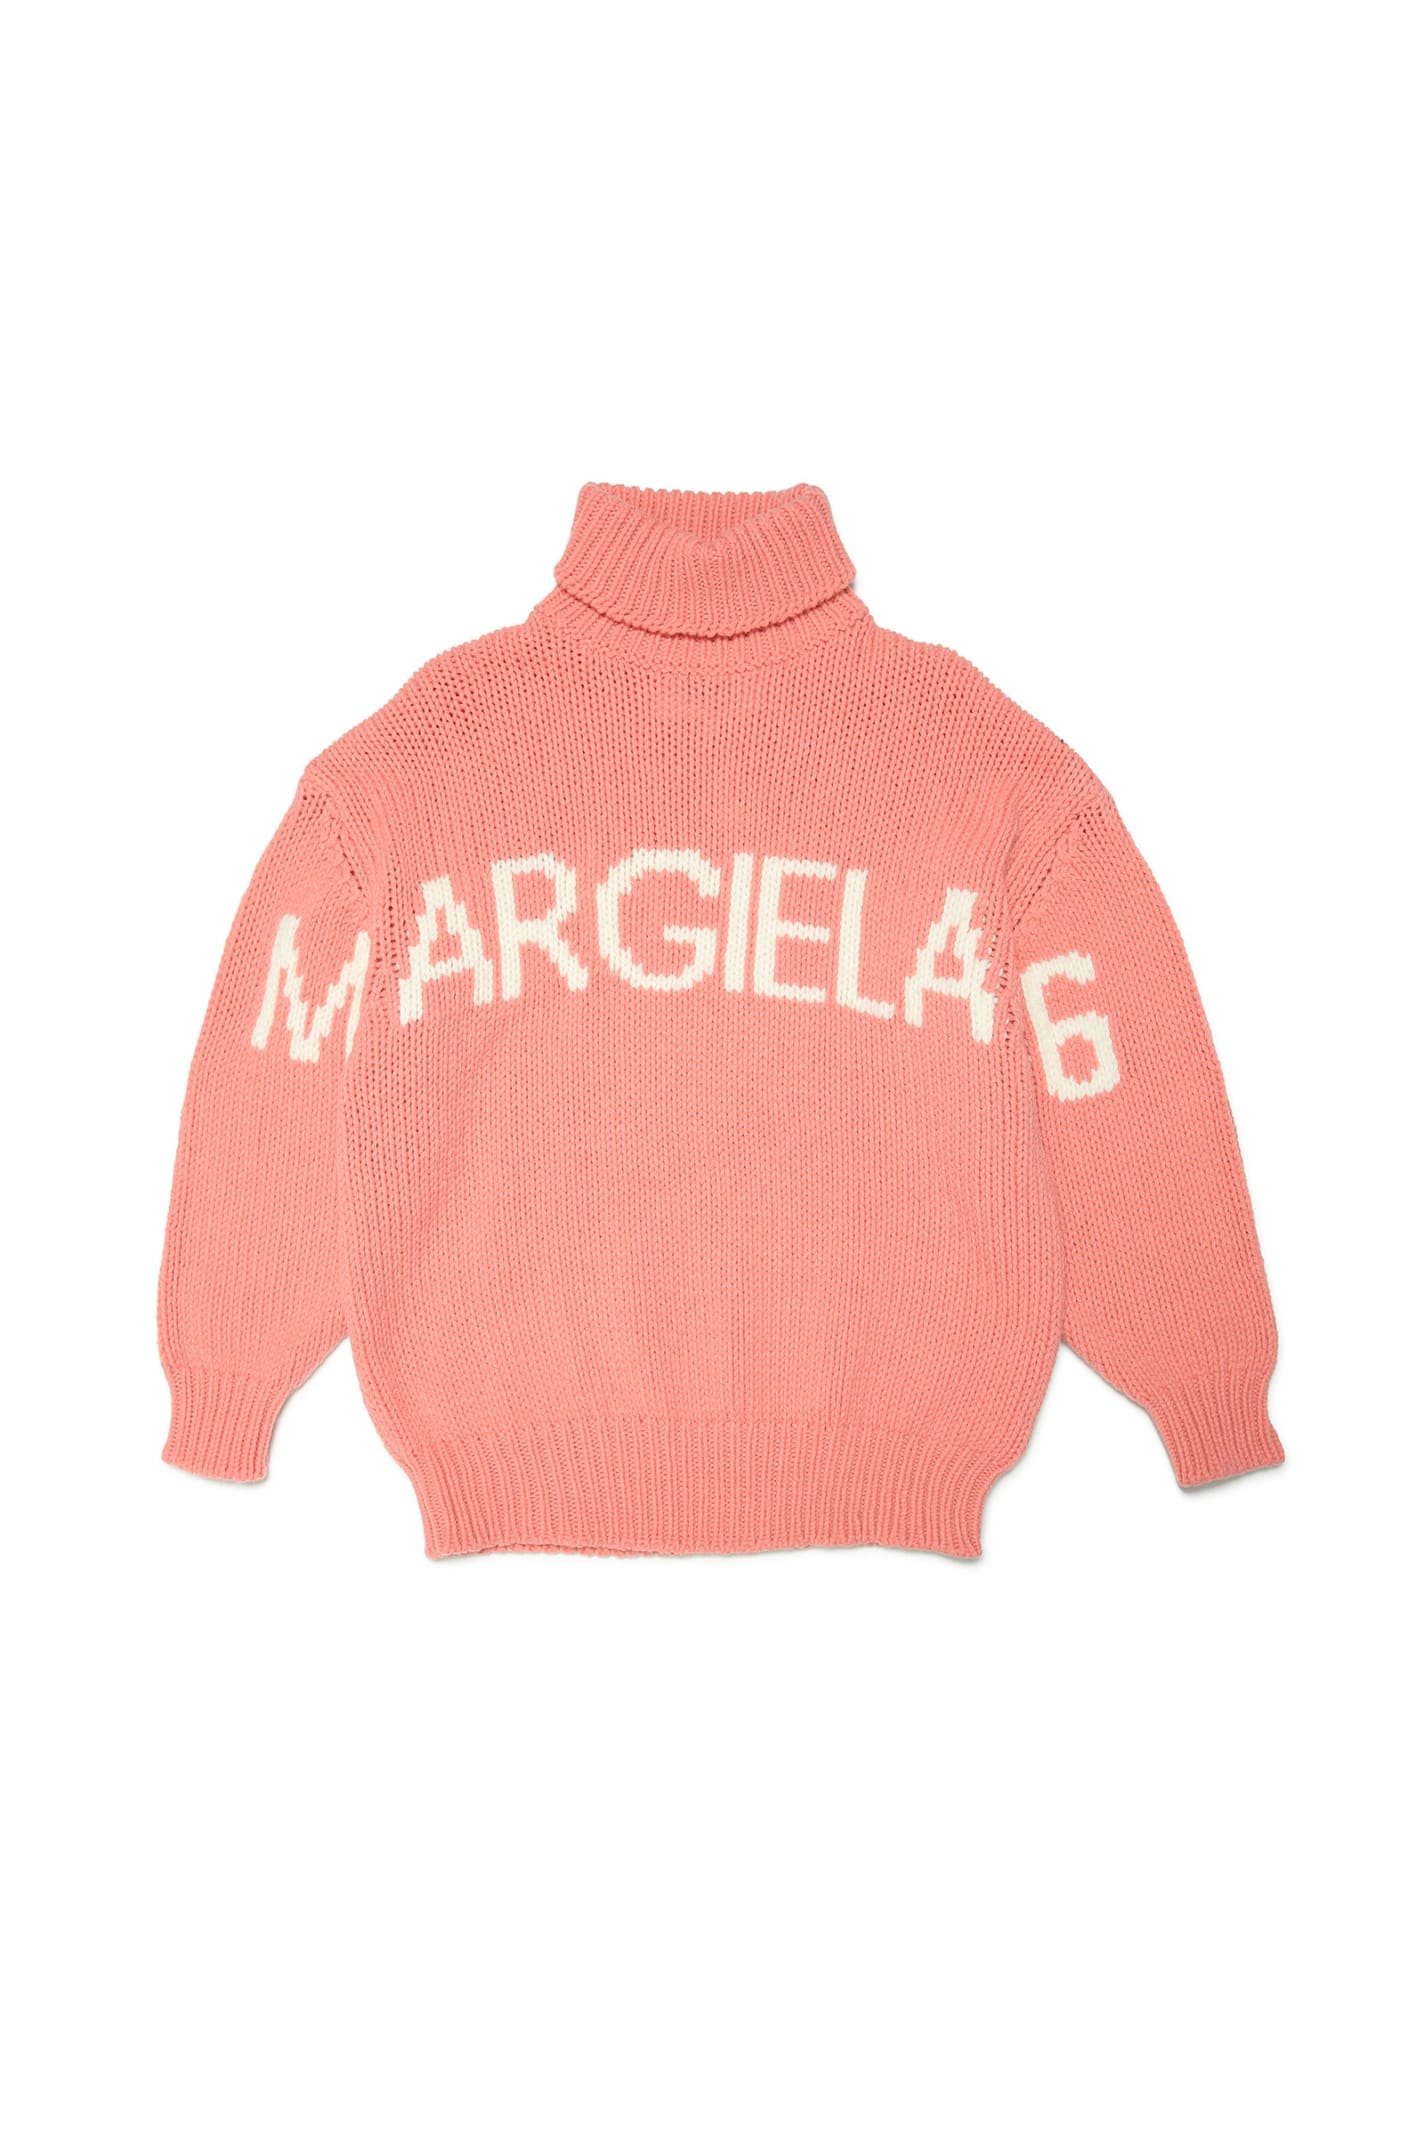 MM6 Maison Margiela Mm6k7u Knitwear Maison Margiela